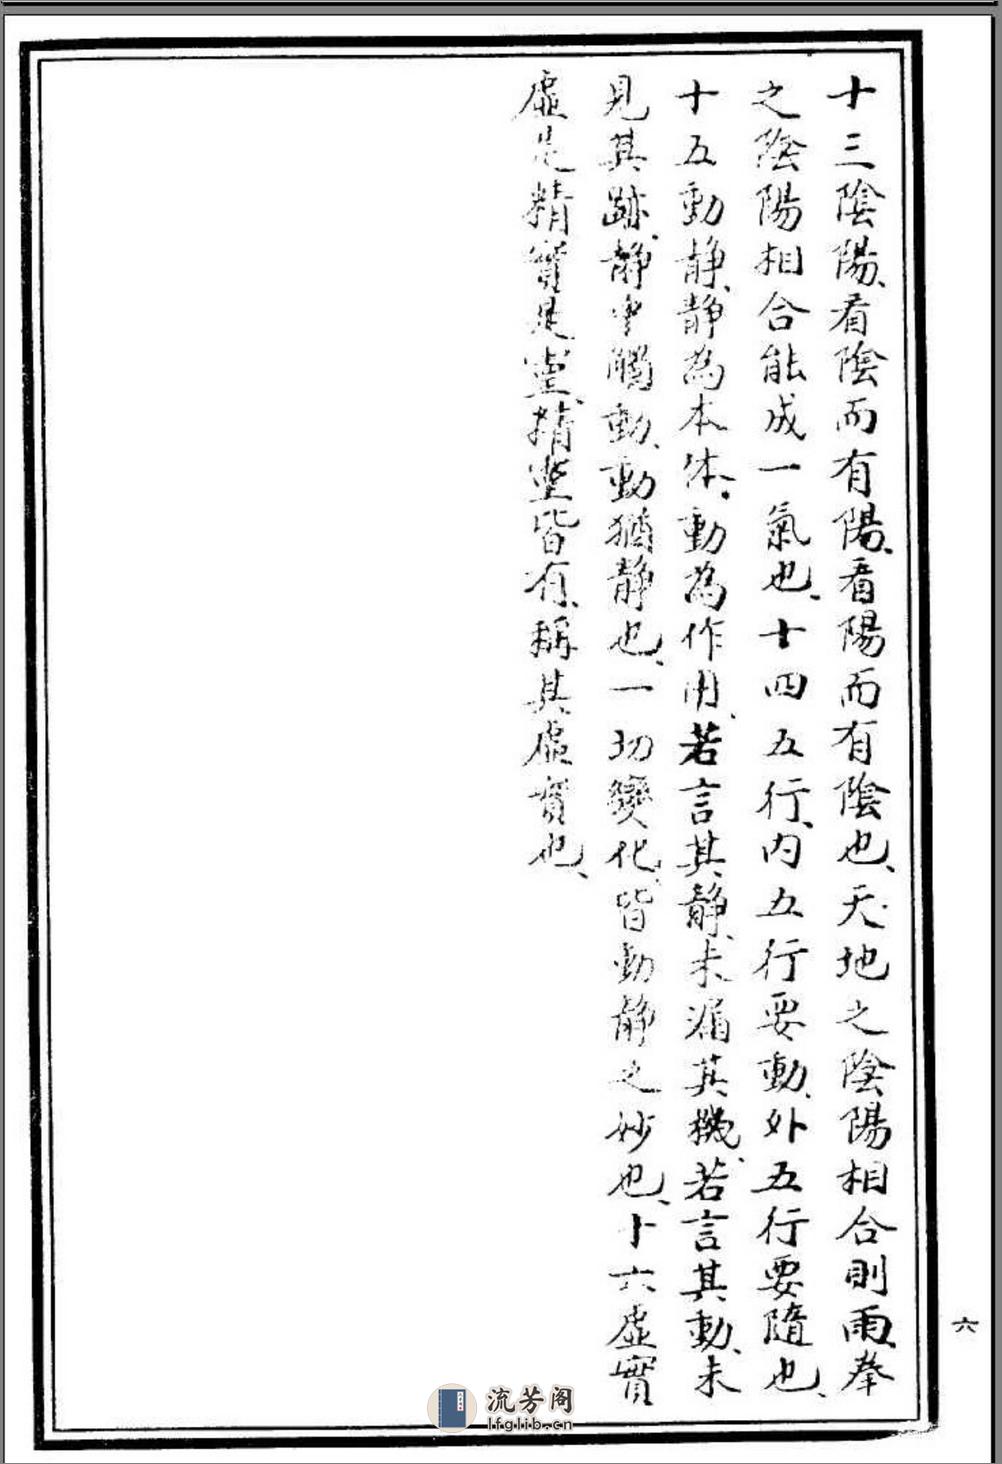 《岳氏意拳十二形精义》李存义、董秀升 - 第11页预览图